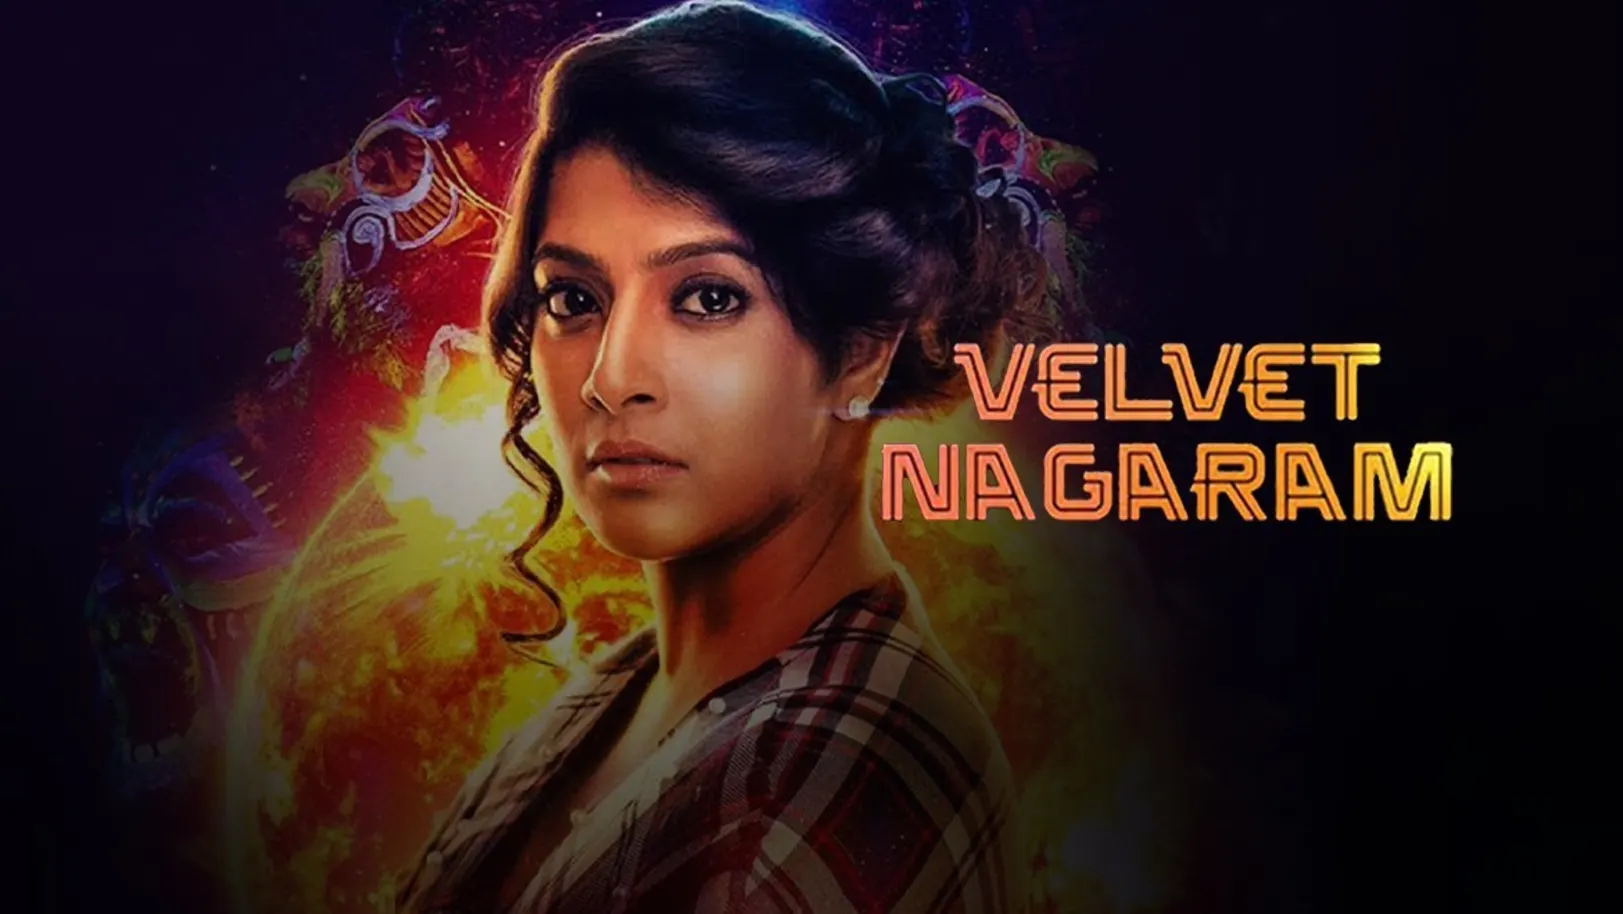 Velvet Nagaram Movie